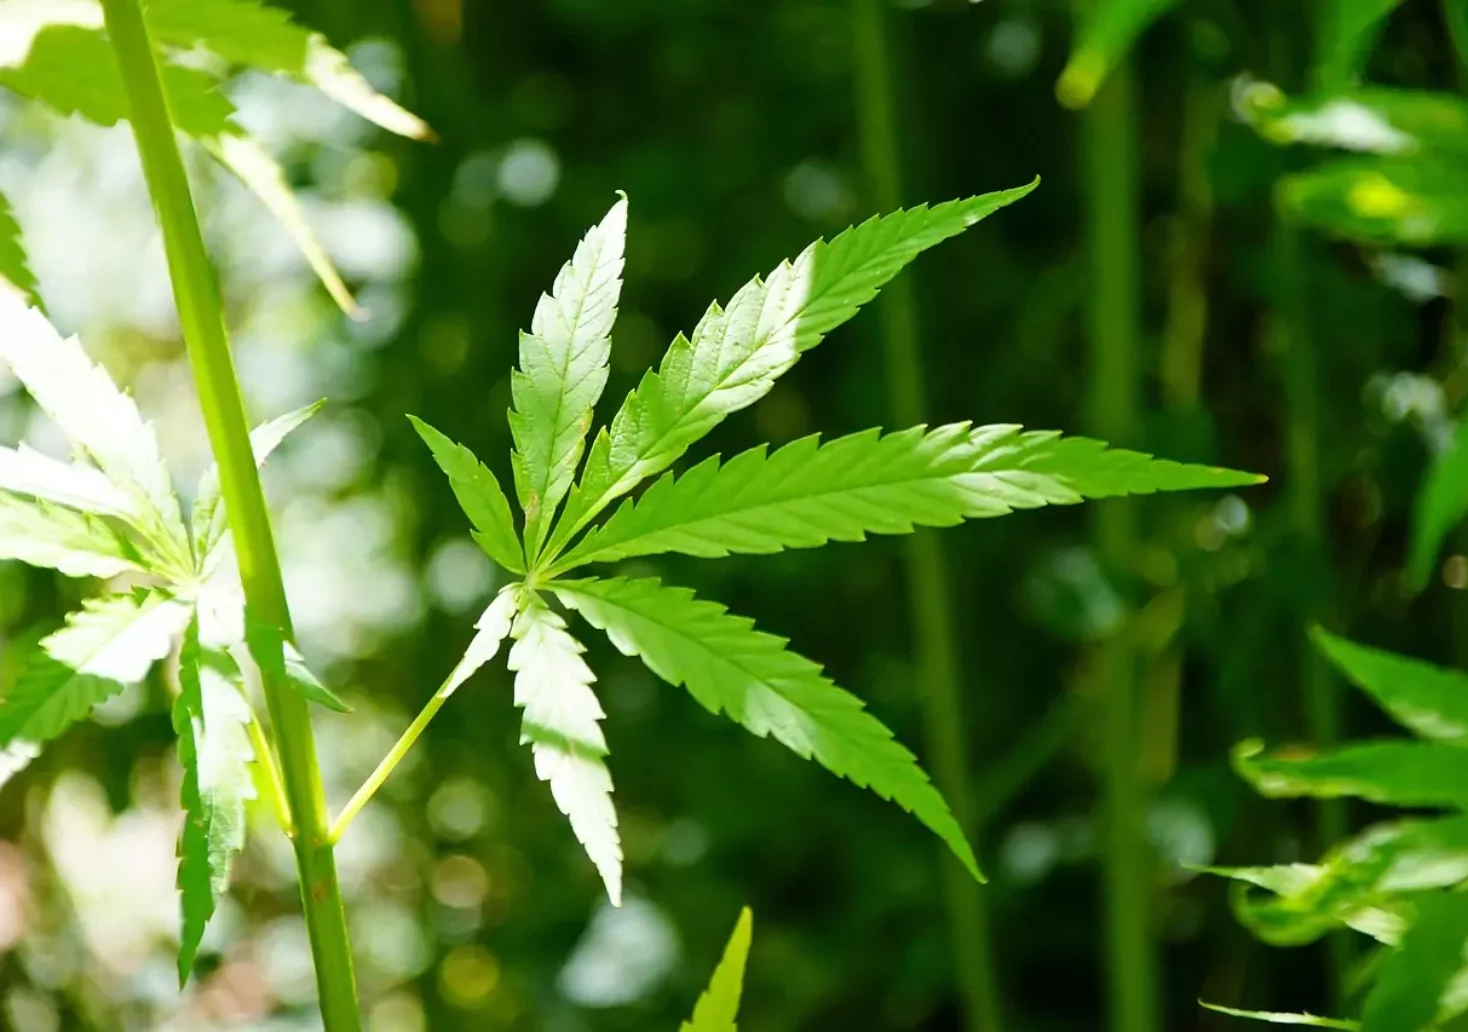 Symbolfoto auf 5min.at zeigt ein Cannabis-Blatt.